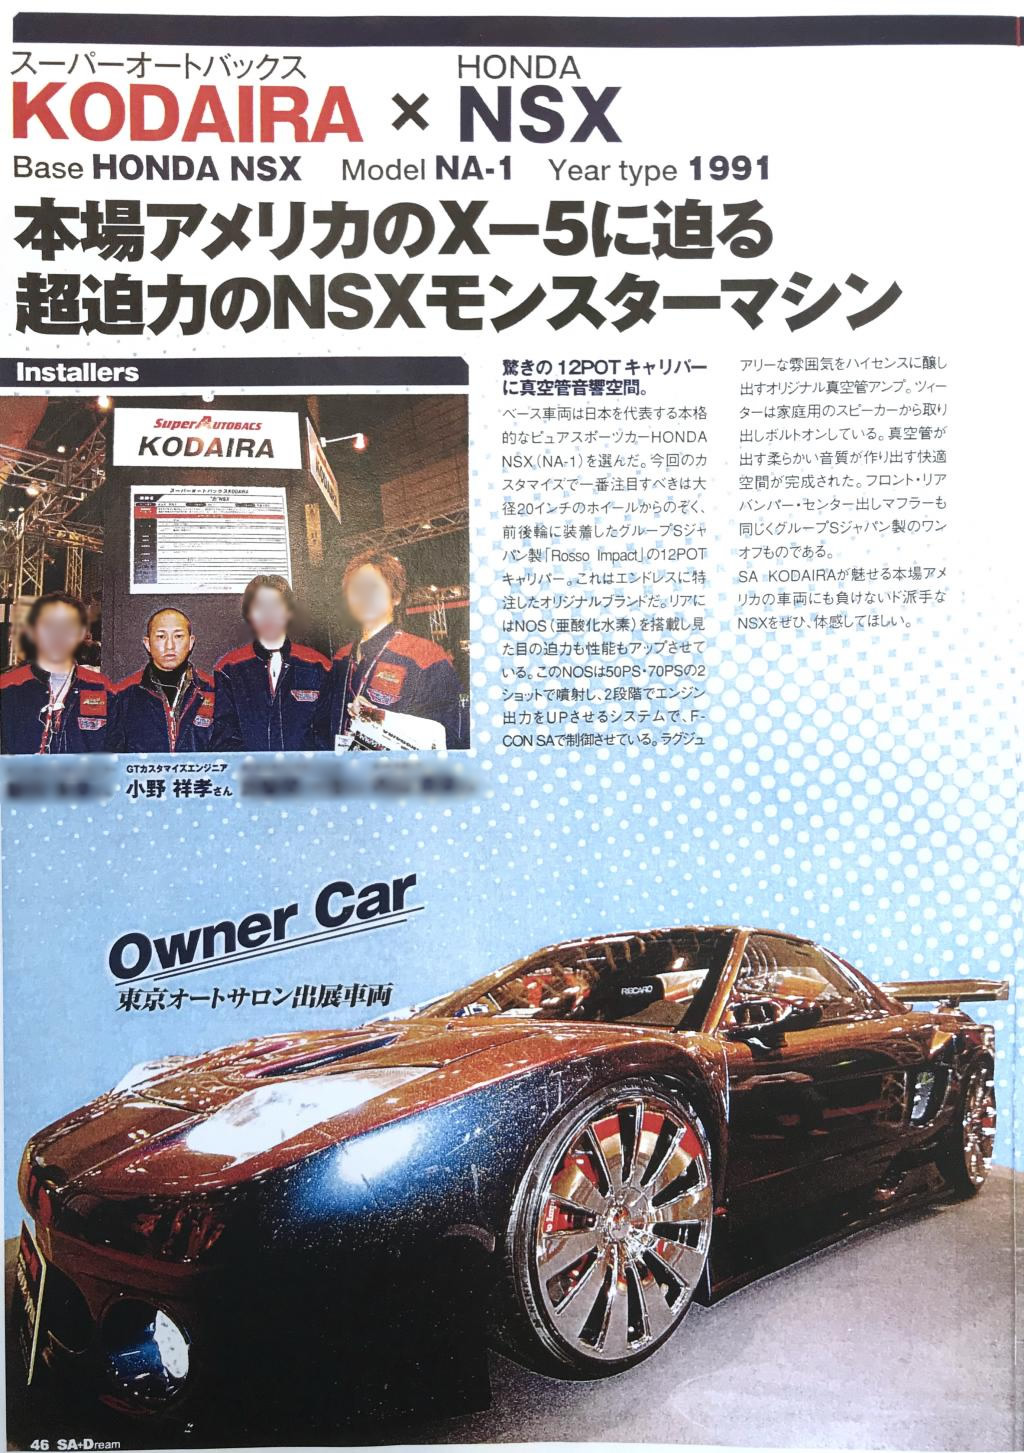 2006年オートサロン出展車両NSXが特別賞受賞